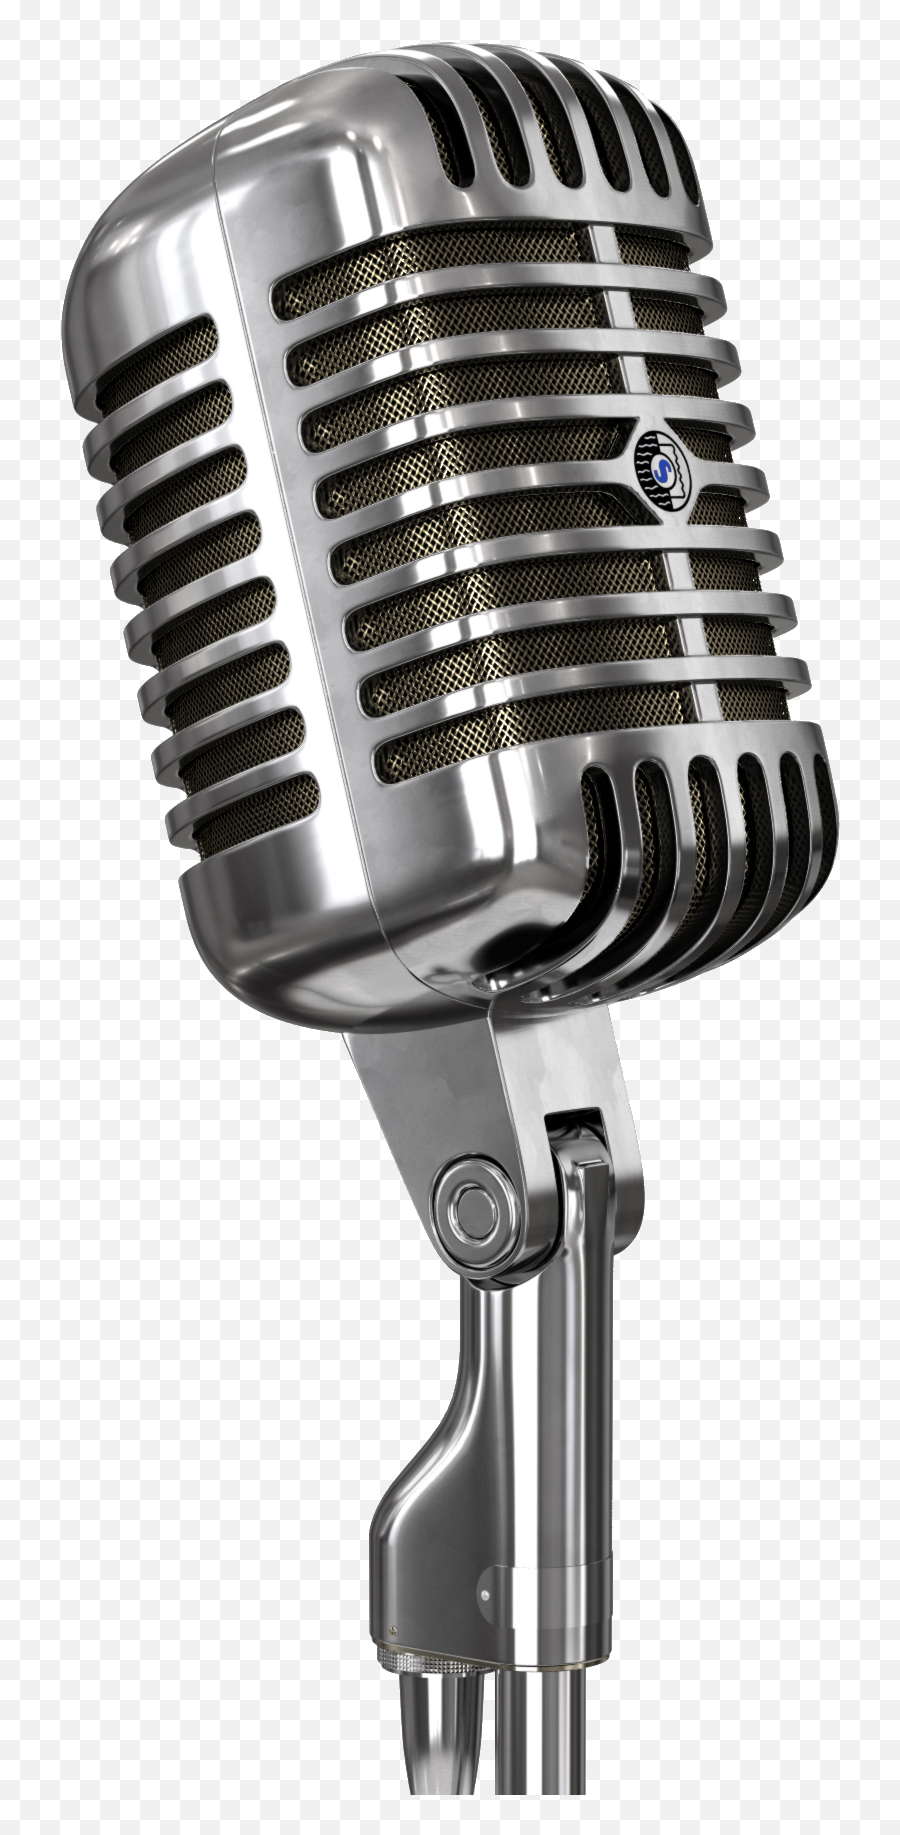 Microphone Stand - Microphone Transparent Emoji,Microphone Emoji Transparent